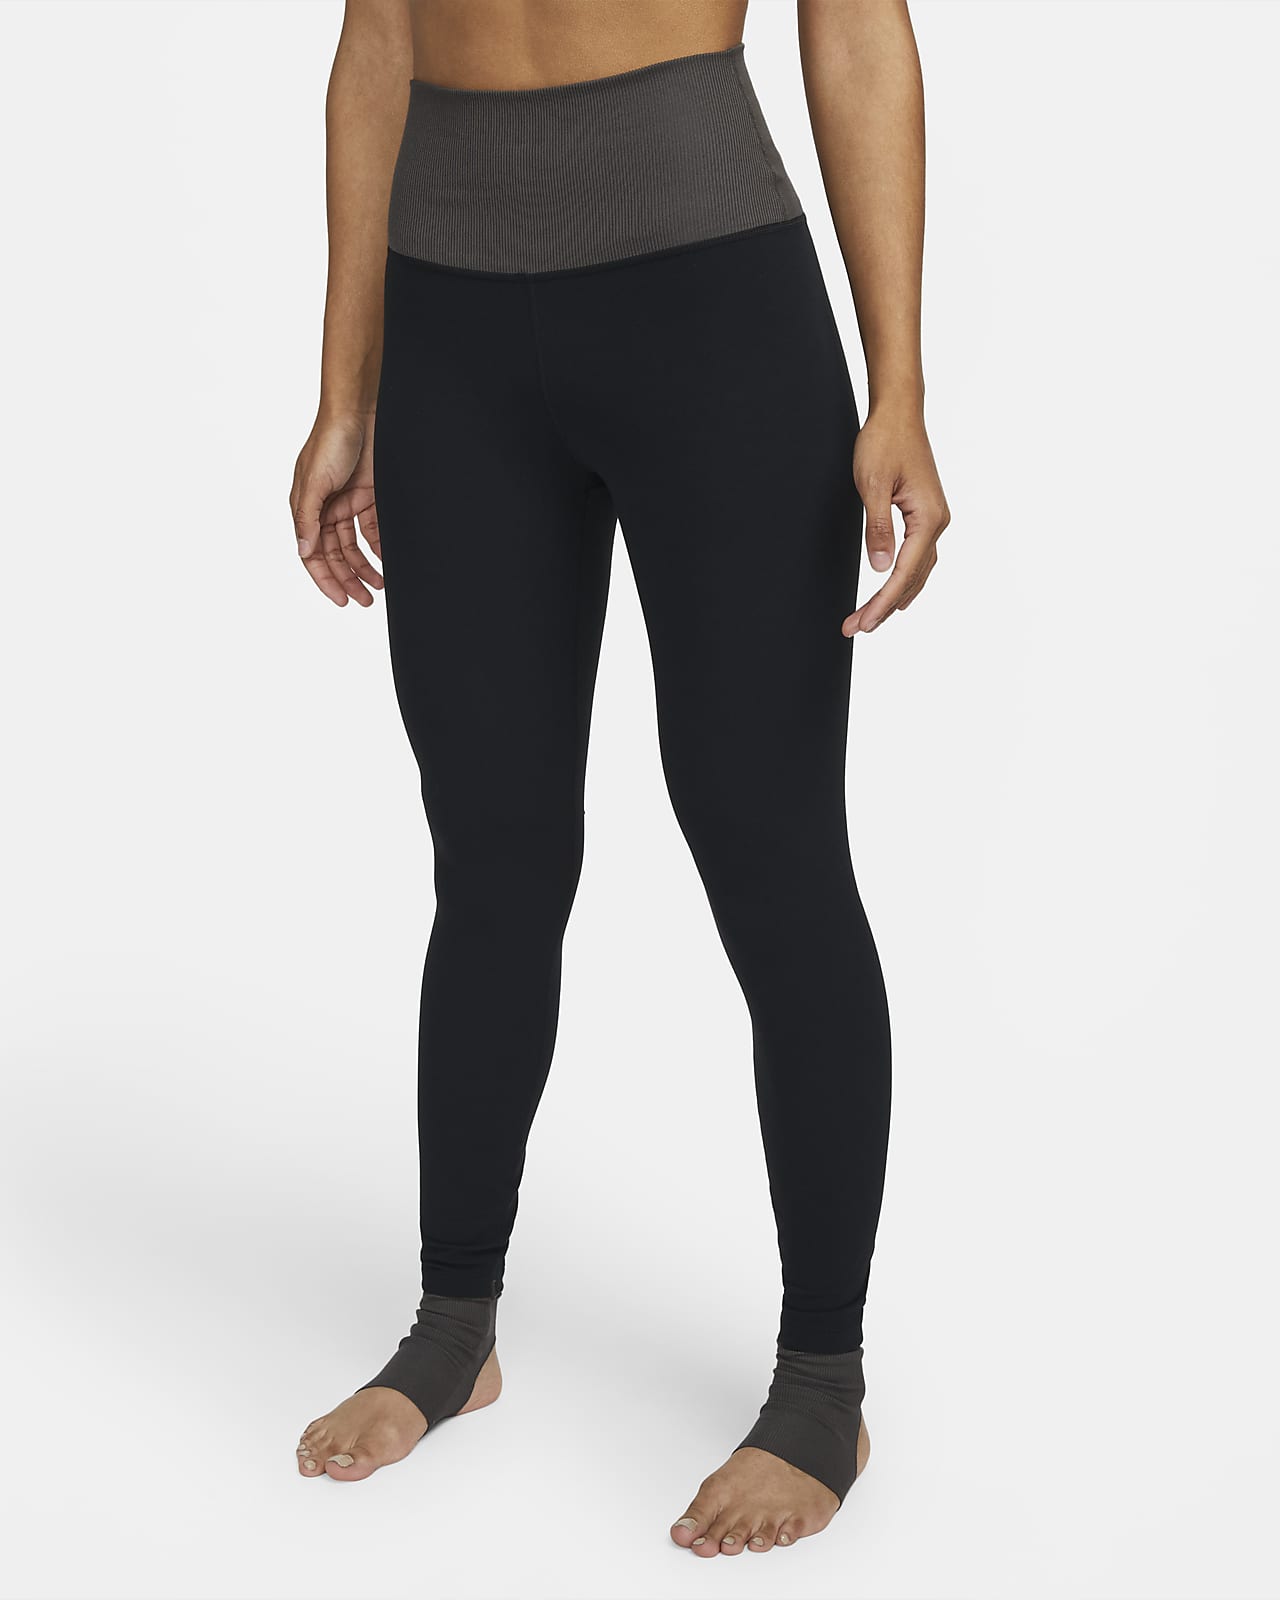 Leggings a 7/8 a vita alta in blocchi di colore Nike Yoga Dri-FIT Luxe – Donna